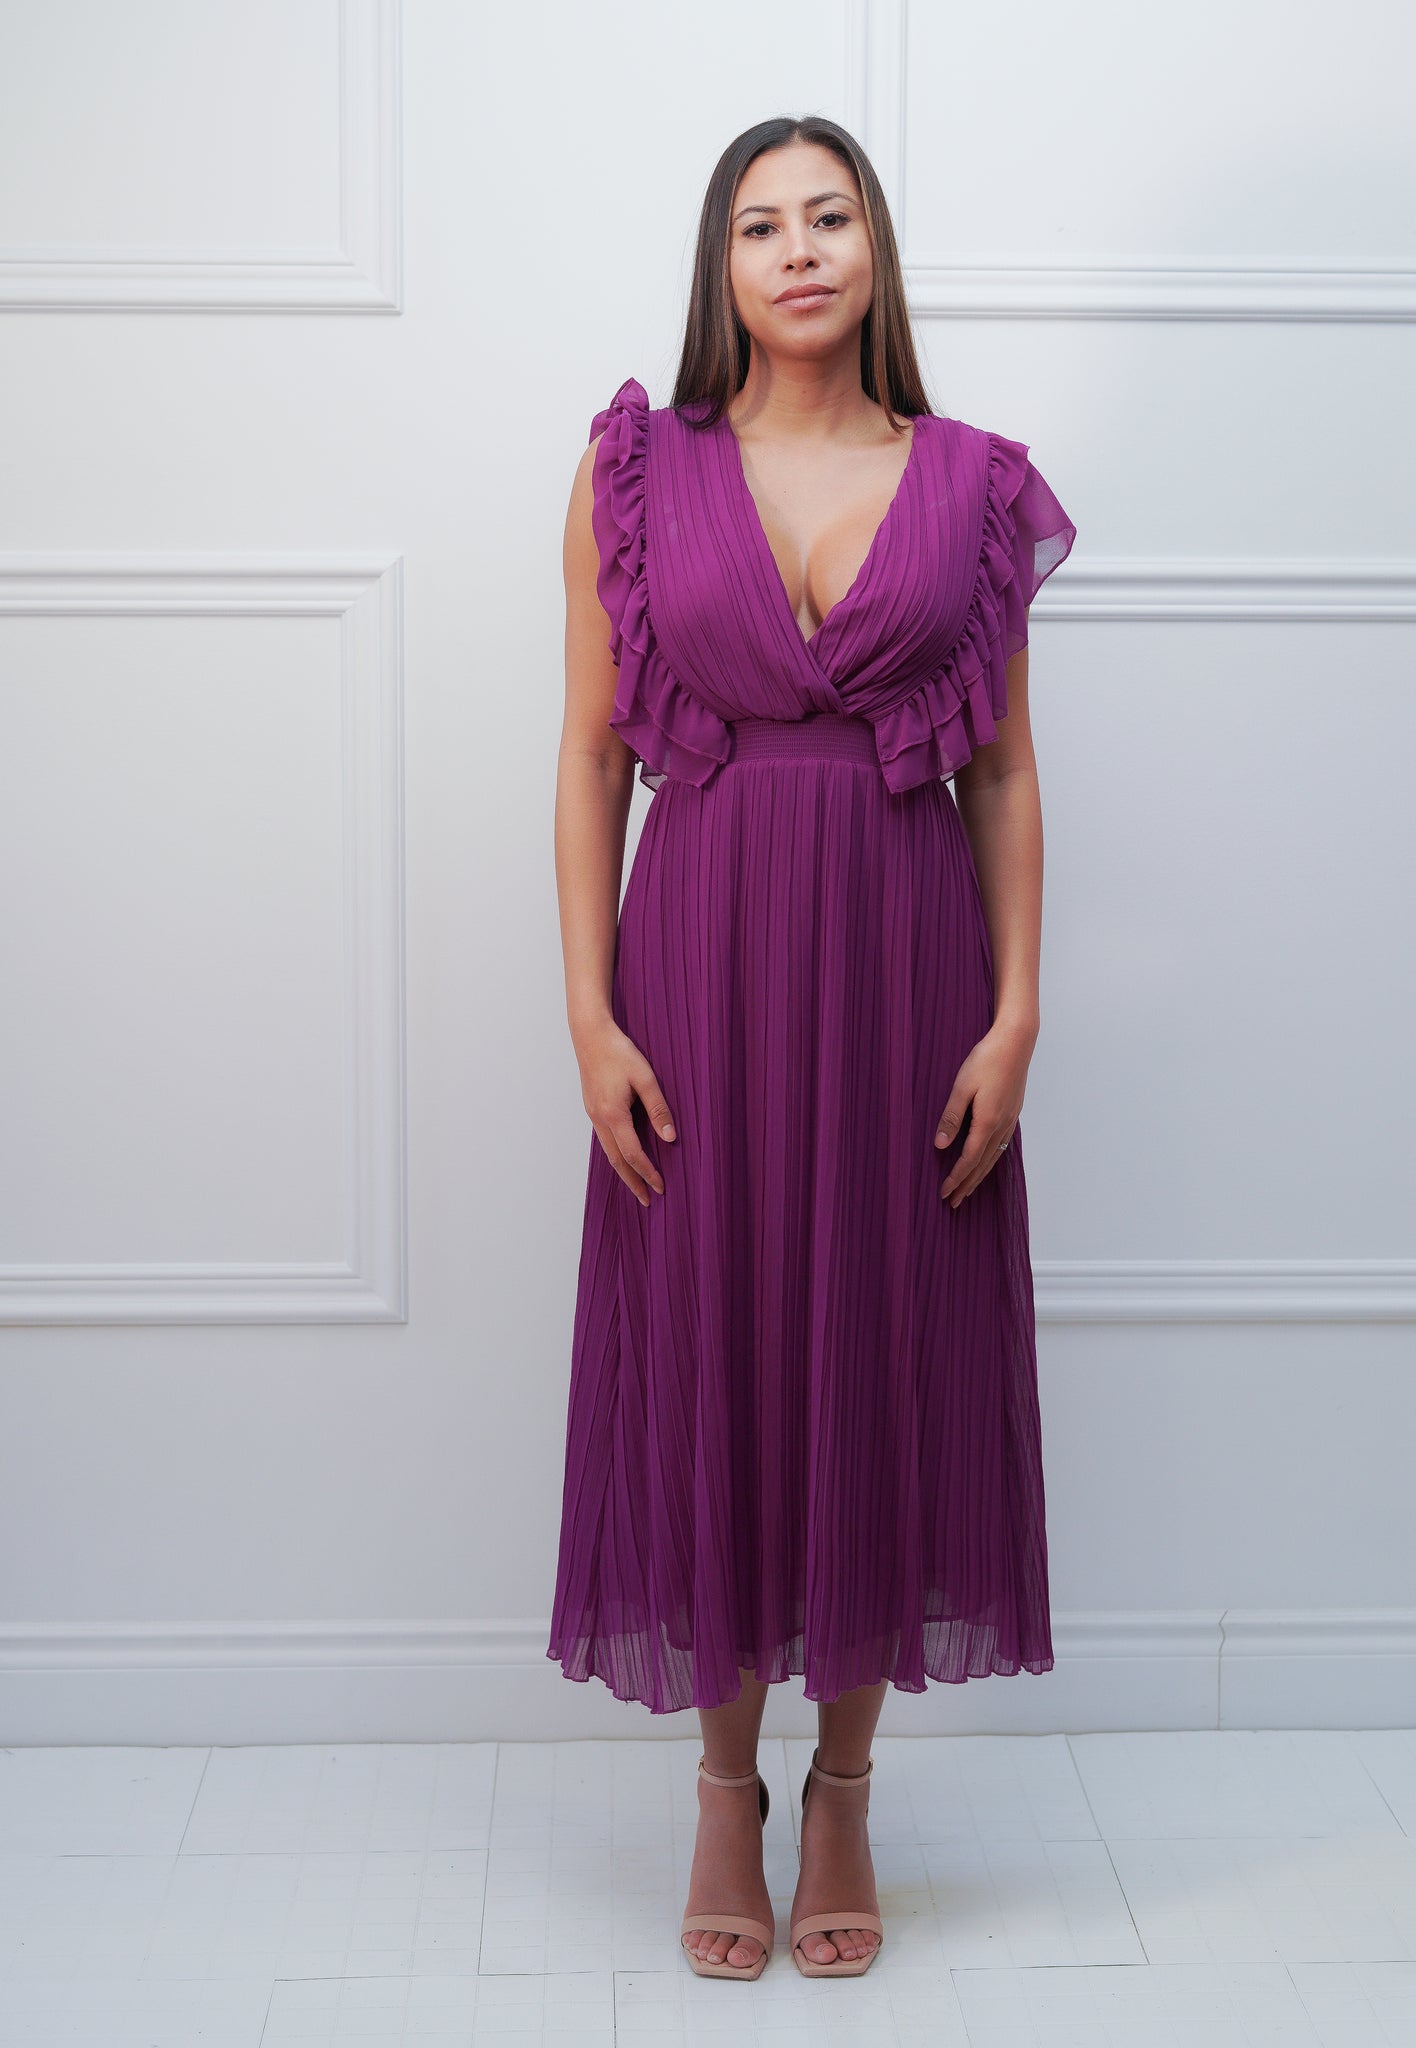 Purple Midi Dress - Rental 